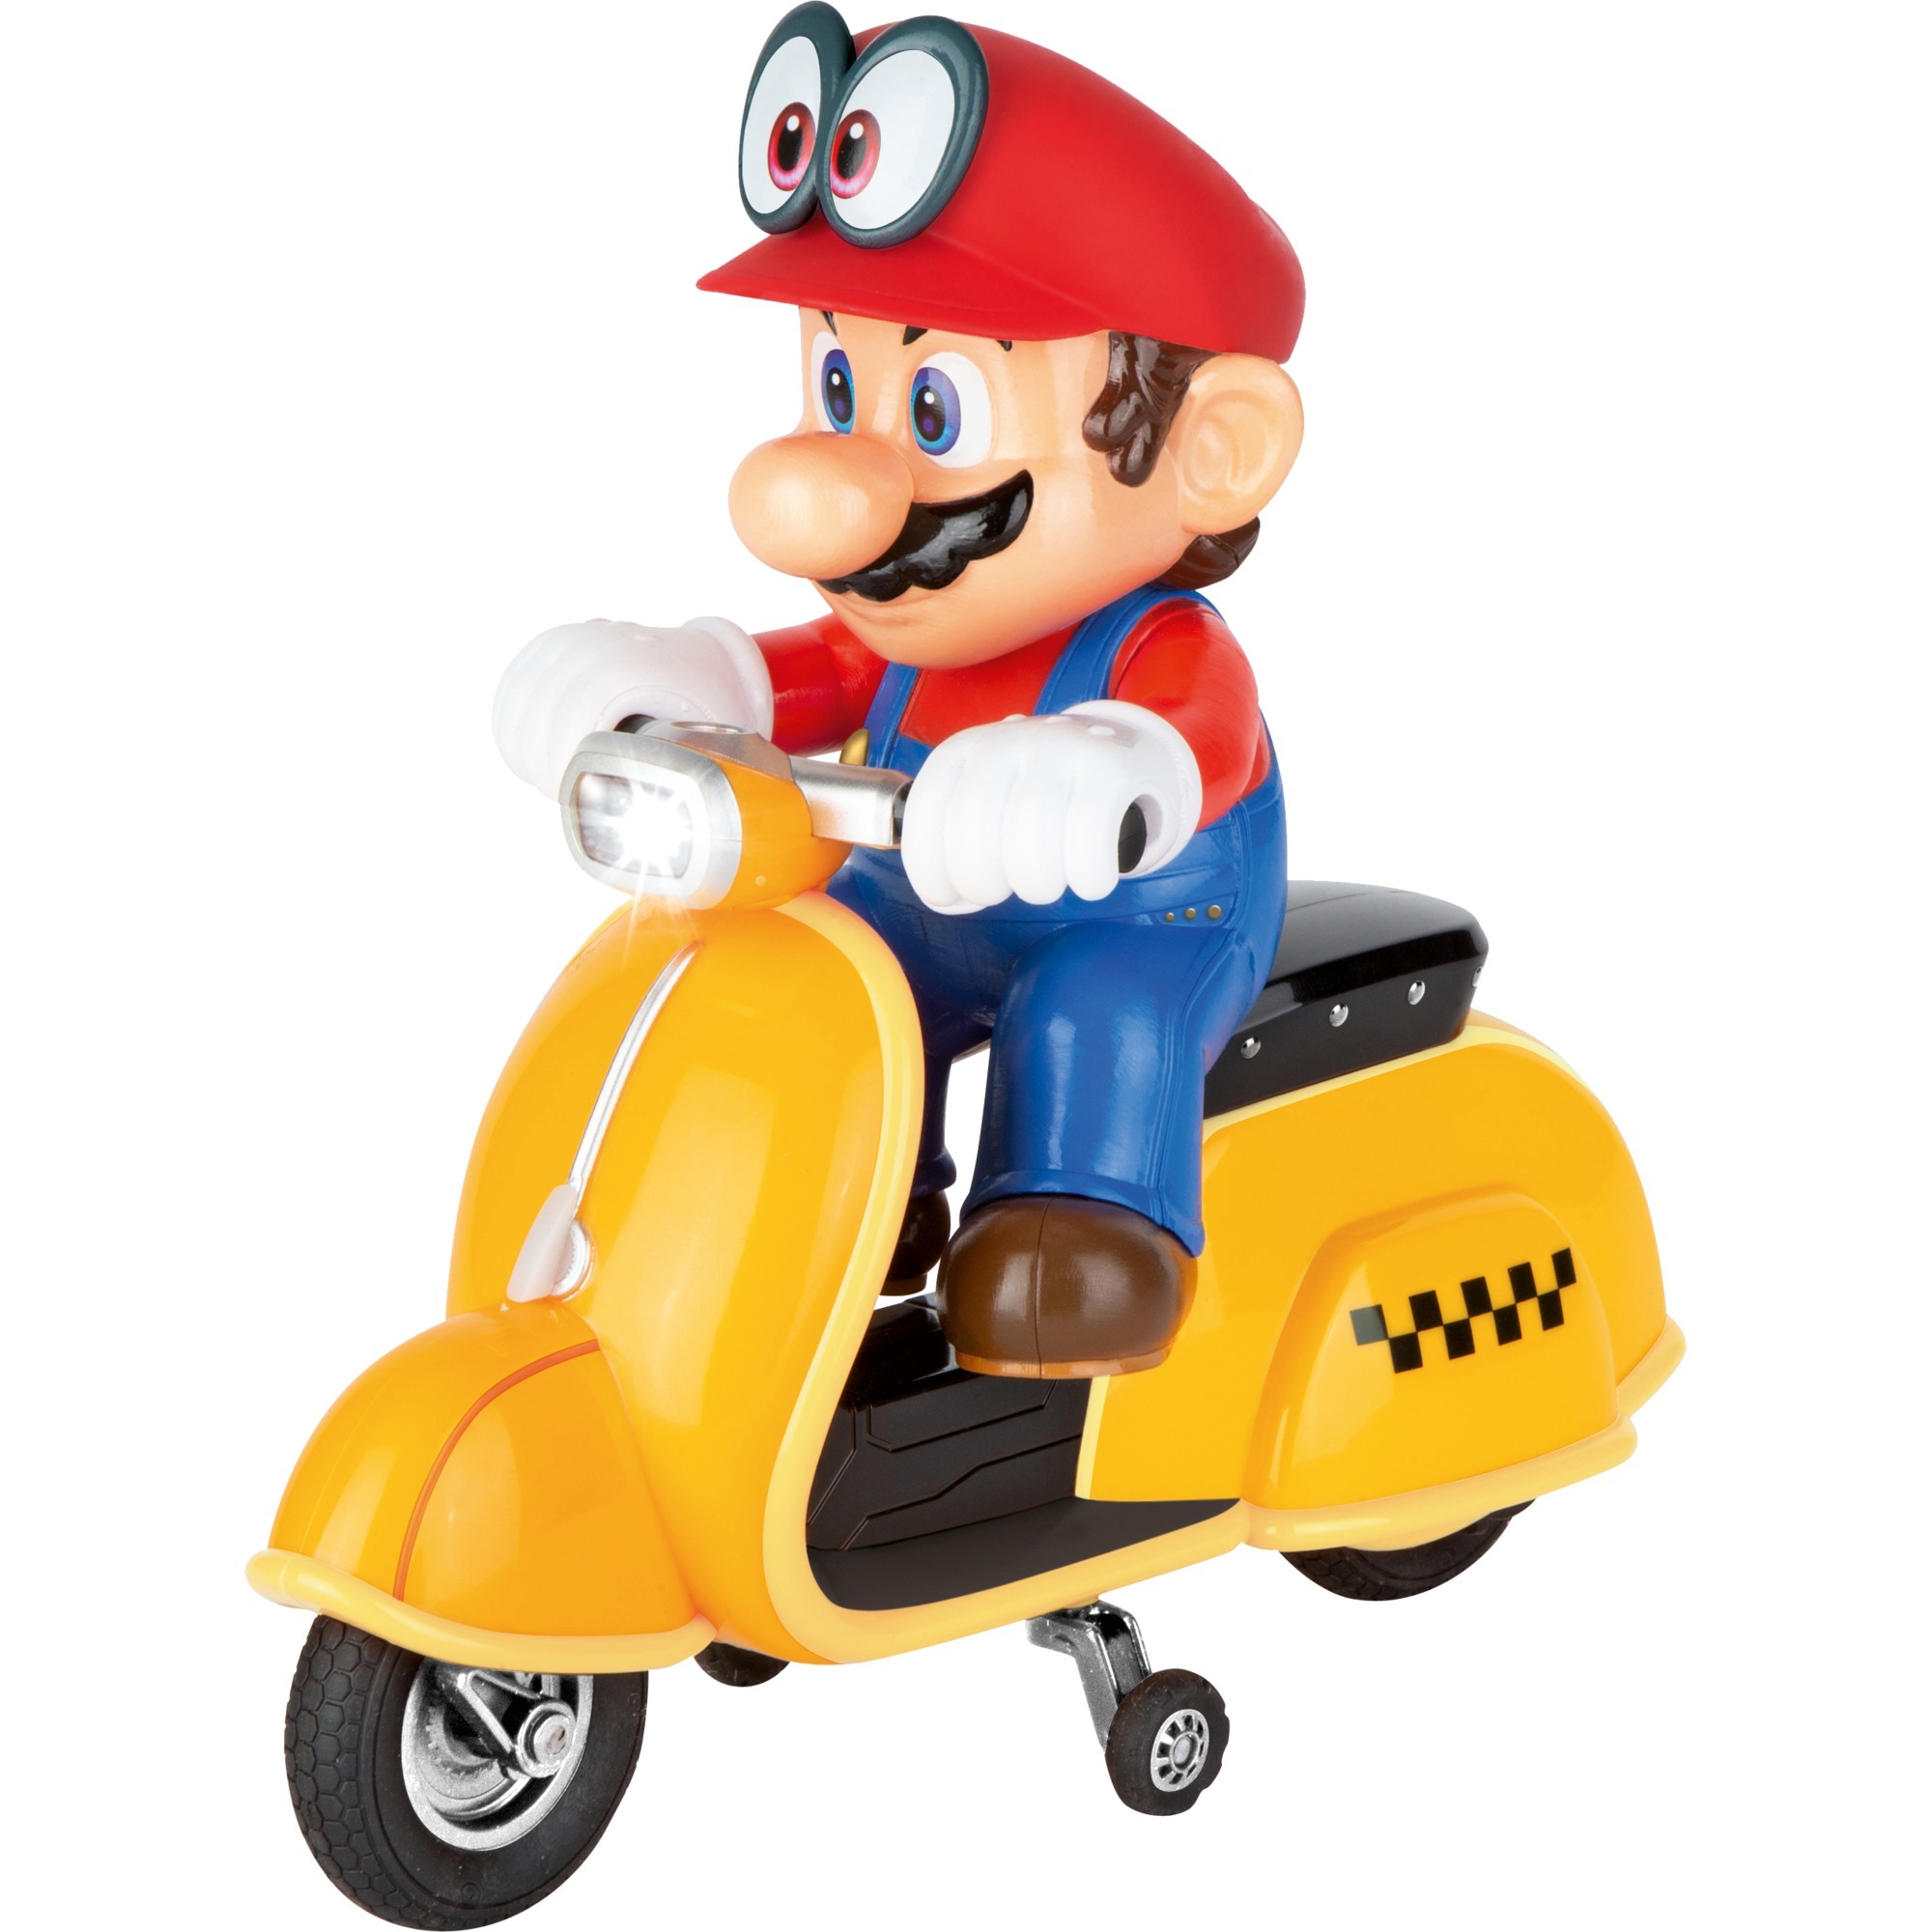 Image of Alternate - RC Super Mario Odyssey Scooter - Mario online einkaufen bei Alternate